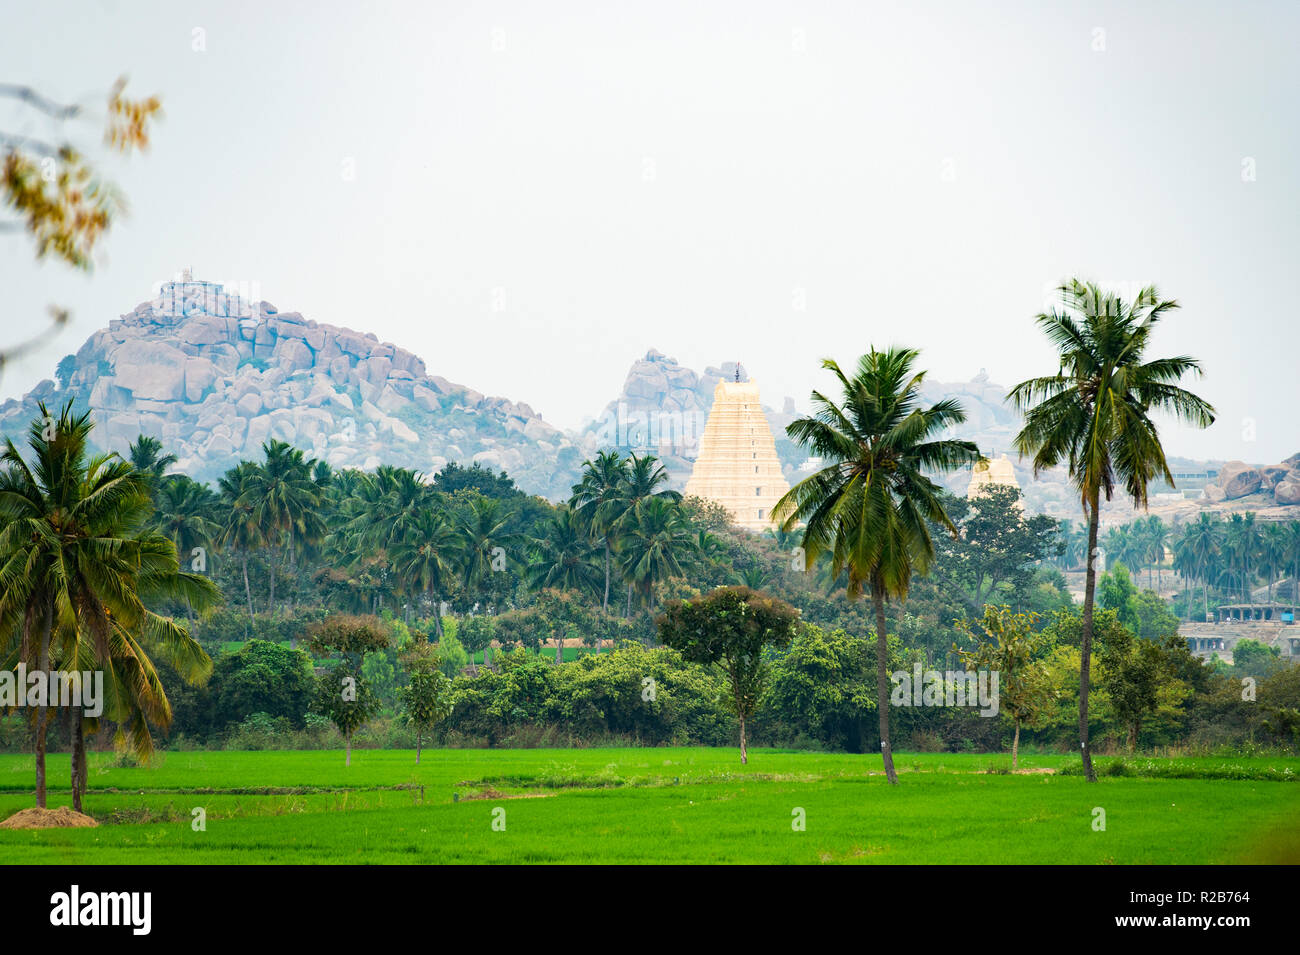 Virupaksha temple durch grüne Reisfelder und schöne Palmen umgeben. Hampi, Karnataka, Indien Stockfoto